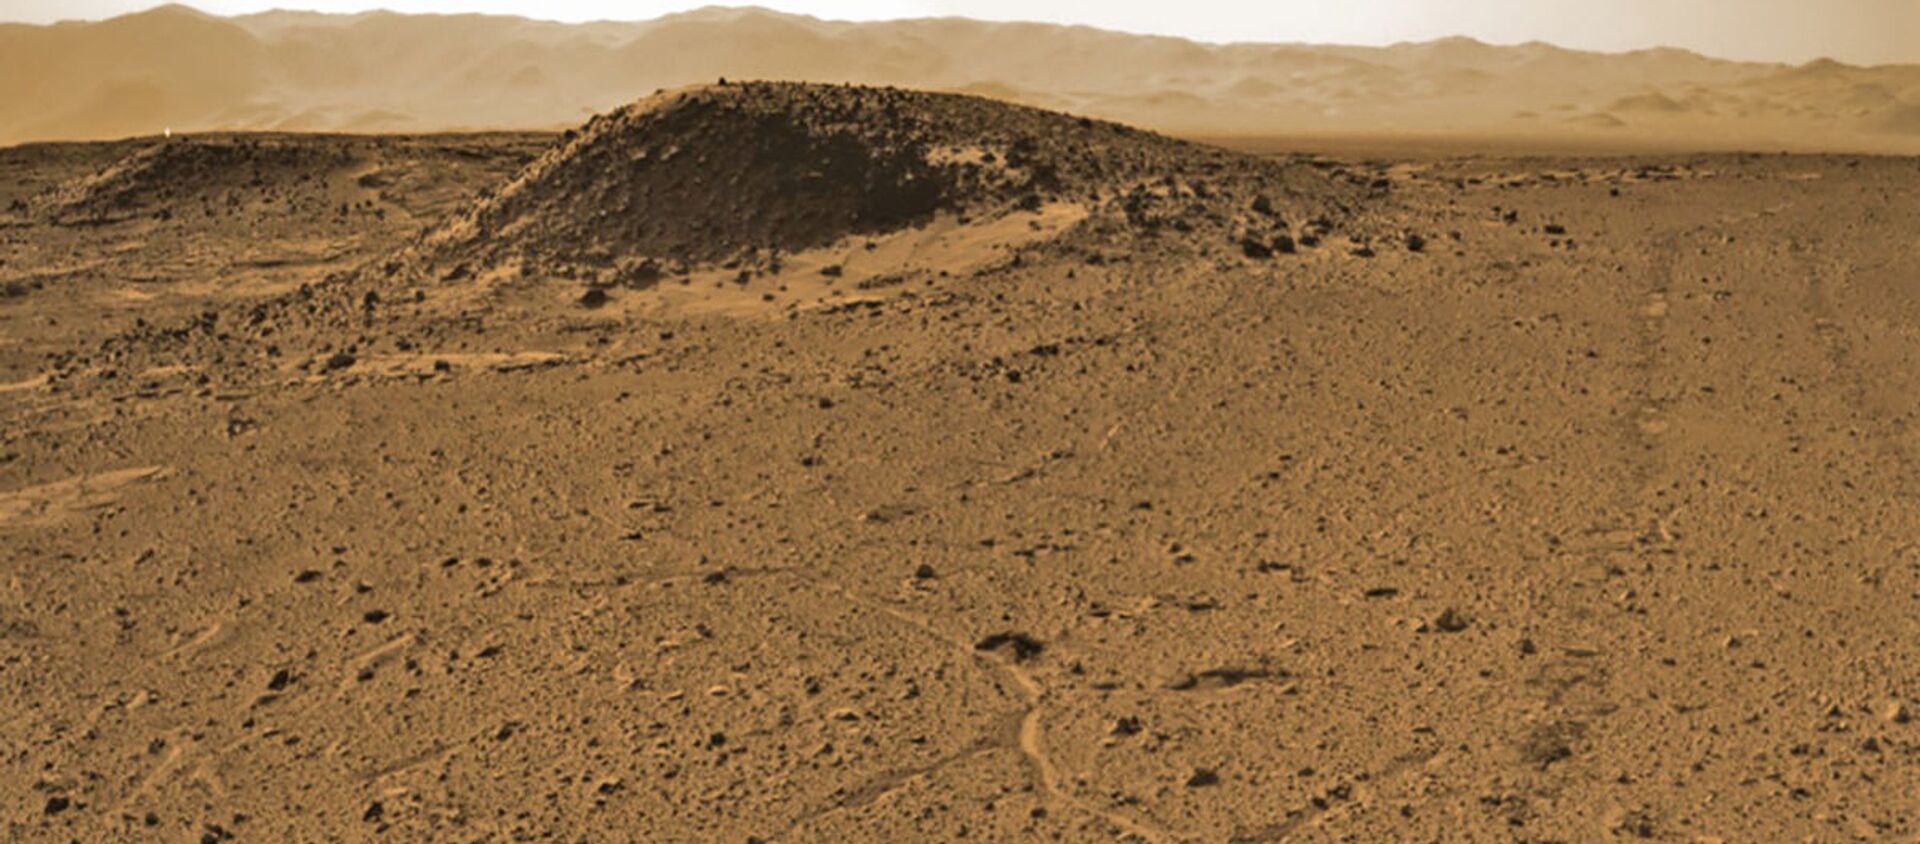 صورة مسح لمنطقة كيمبرلي (Kimberley)، التي أقارت فضول العلماء لصخورها المريخية عند محاولة البحث عن موقع للحفر. الصورة تابع لموقع Sol 589 على كوكب المريخ. 3 أبريل/ نيسان 2014 - سبوتنيك عربي, 1920, 15.02.2021